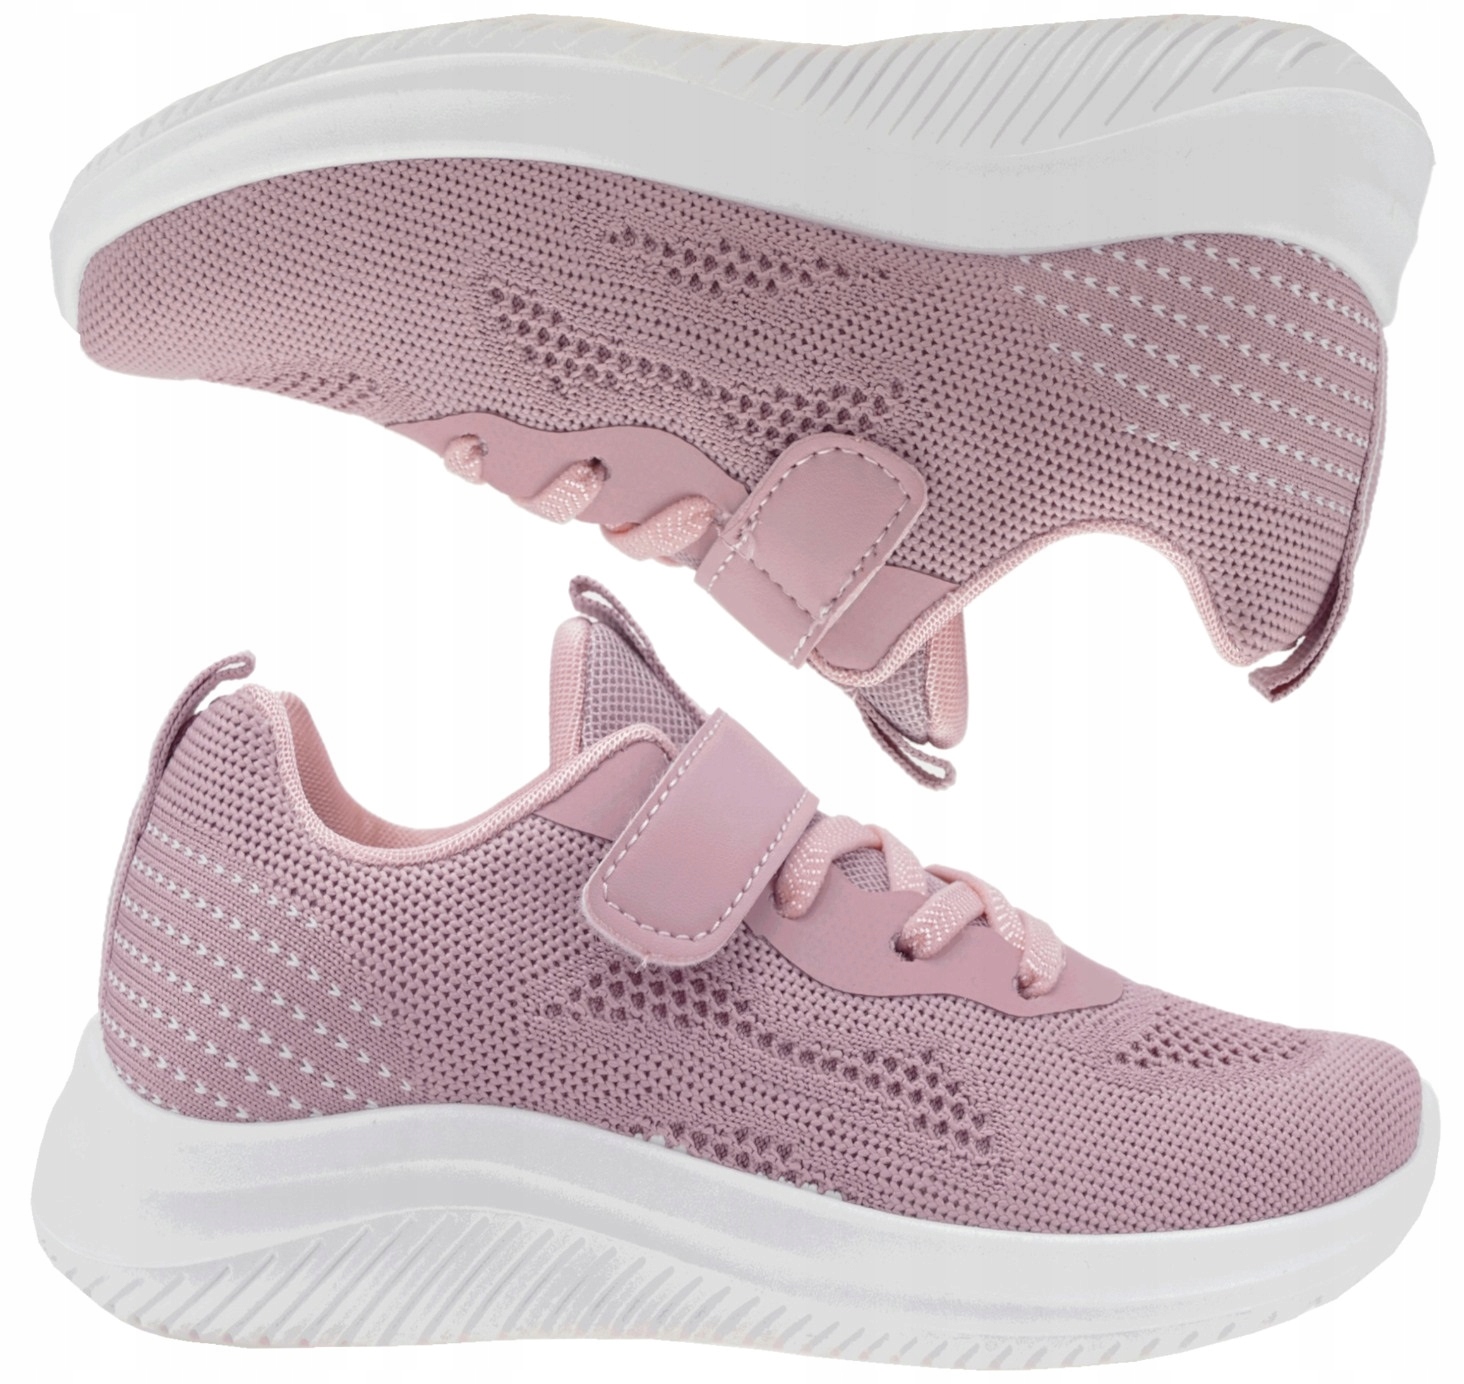 Odľahčená športová obuv, tenisky, detské tenisky r35 ružové P1-157